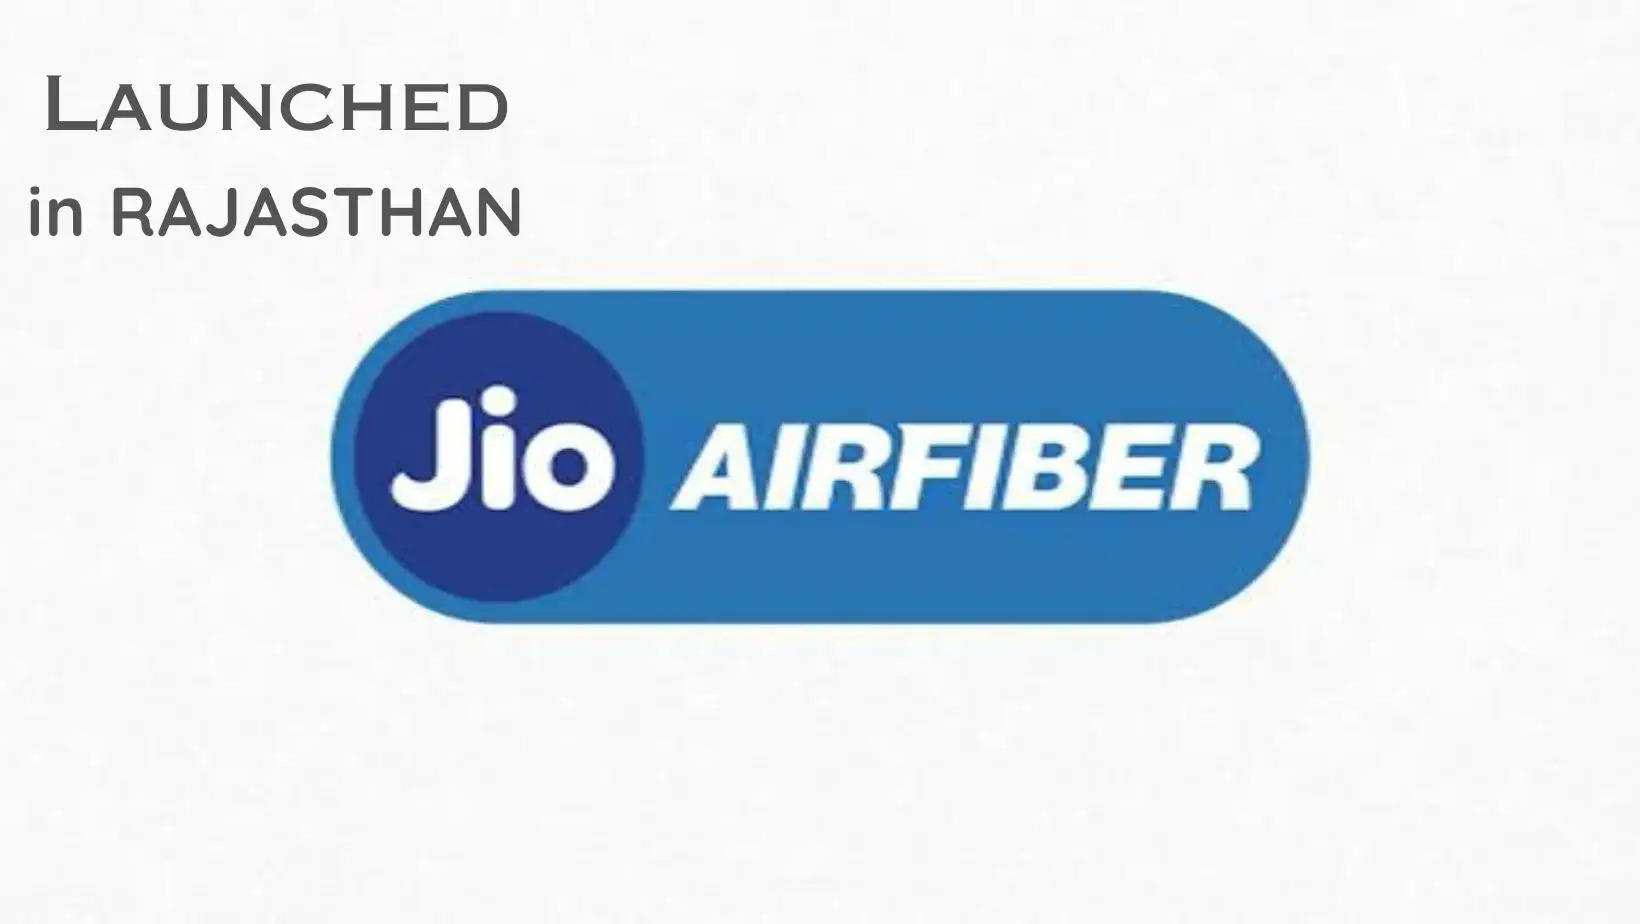  राजस्थान के 43 शहरों में जियो एयर फाइबर सेवाएं शुरू Jio Air Fiber Launched across 43 locations in Rajasthan